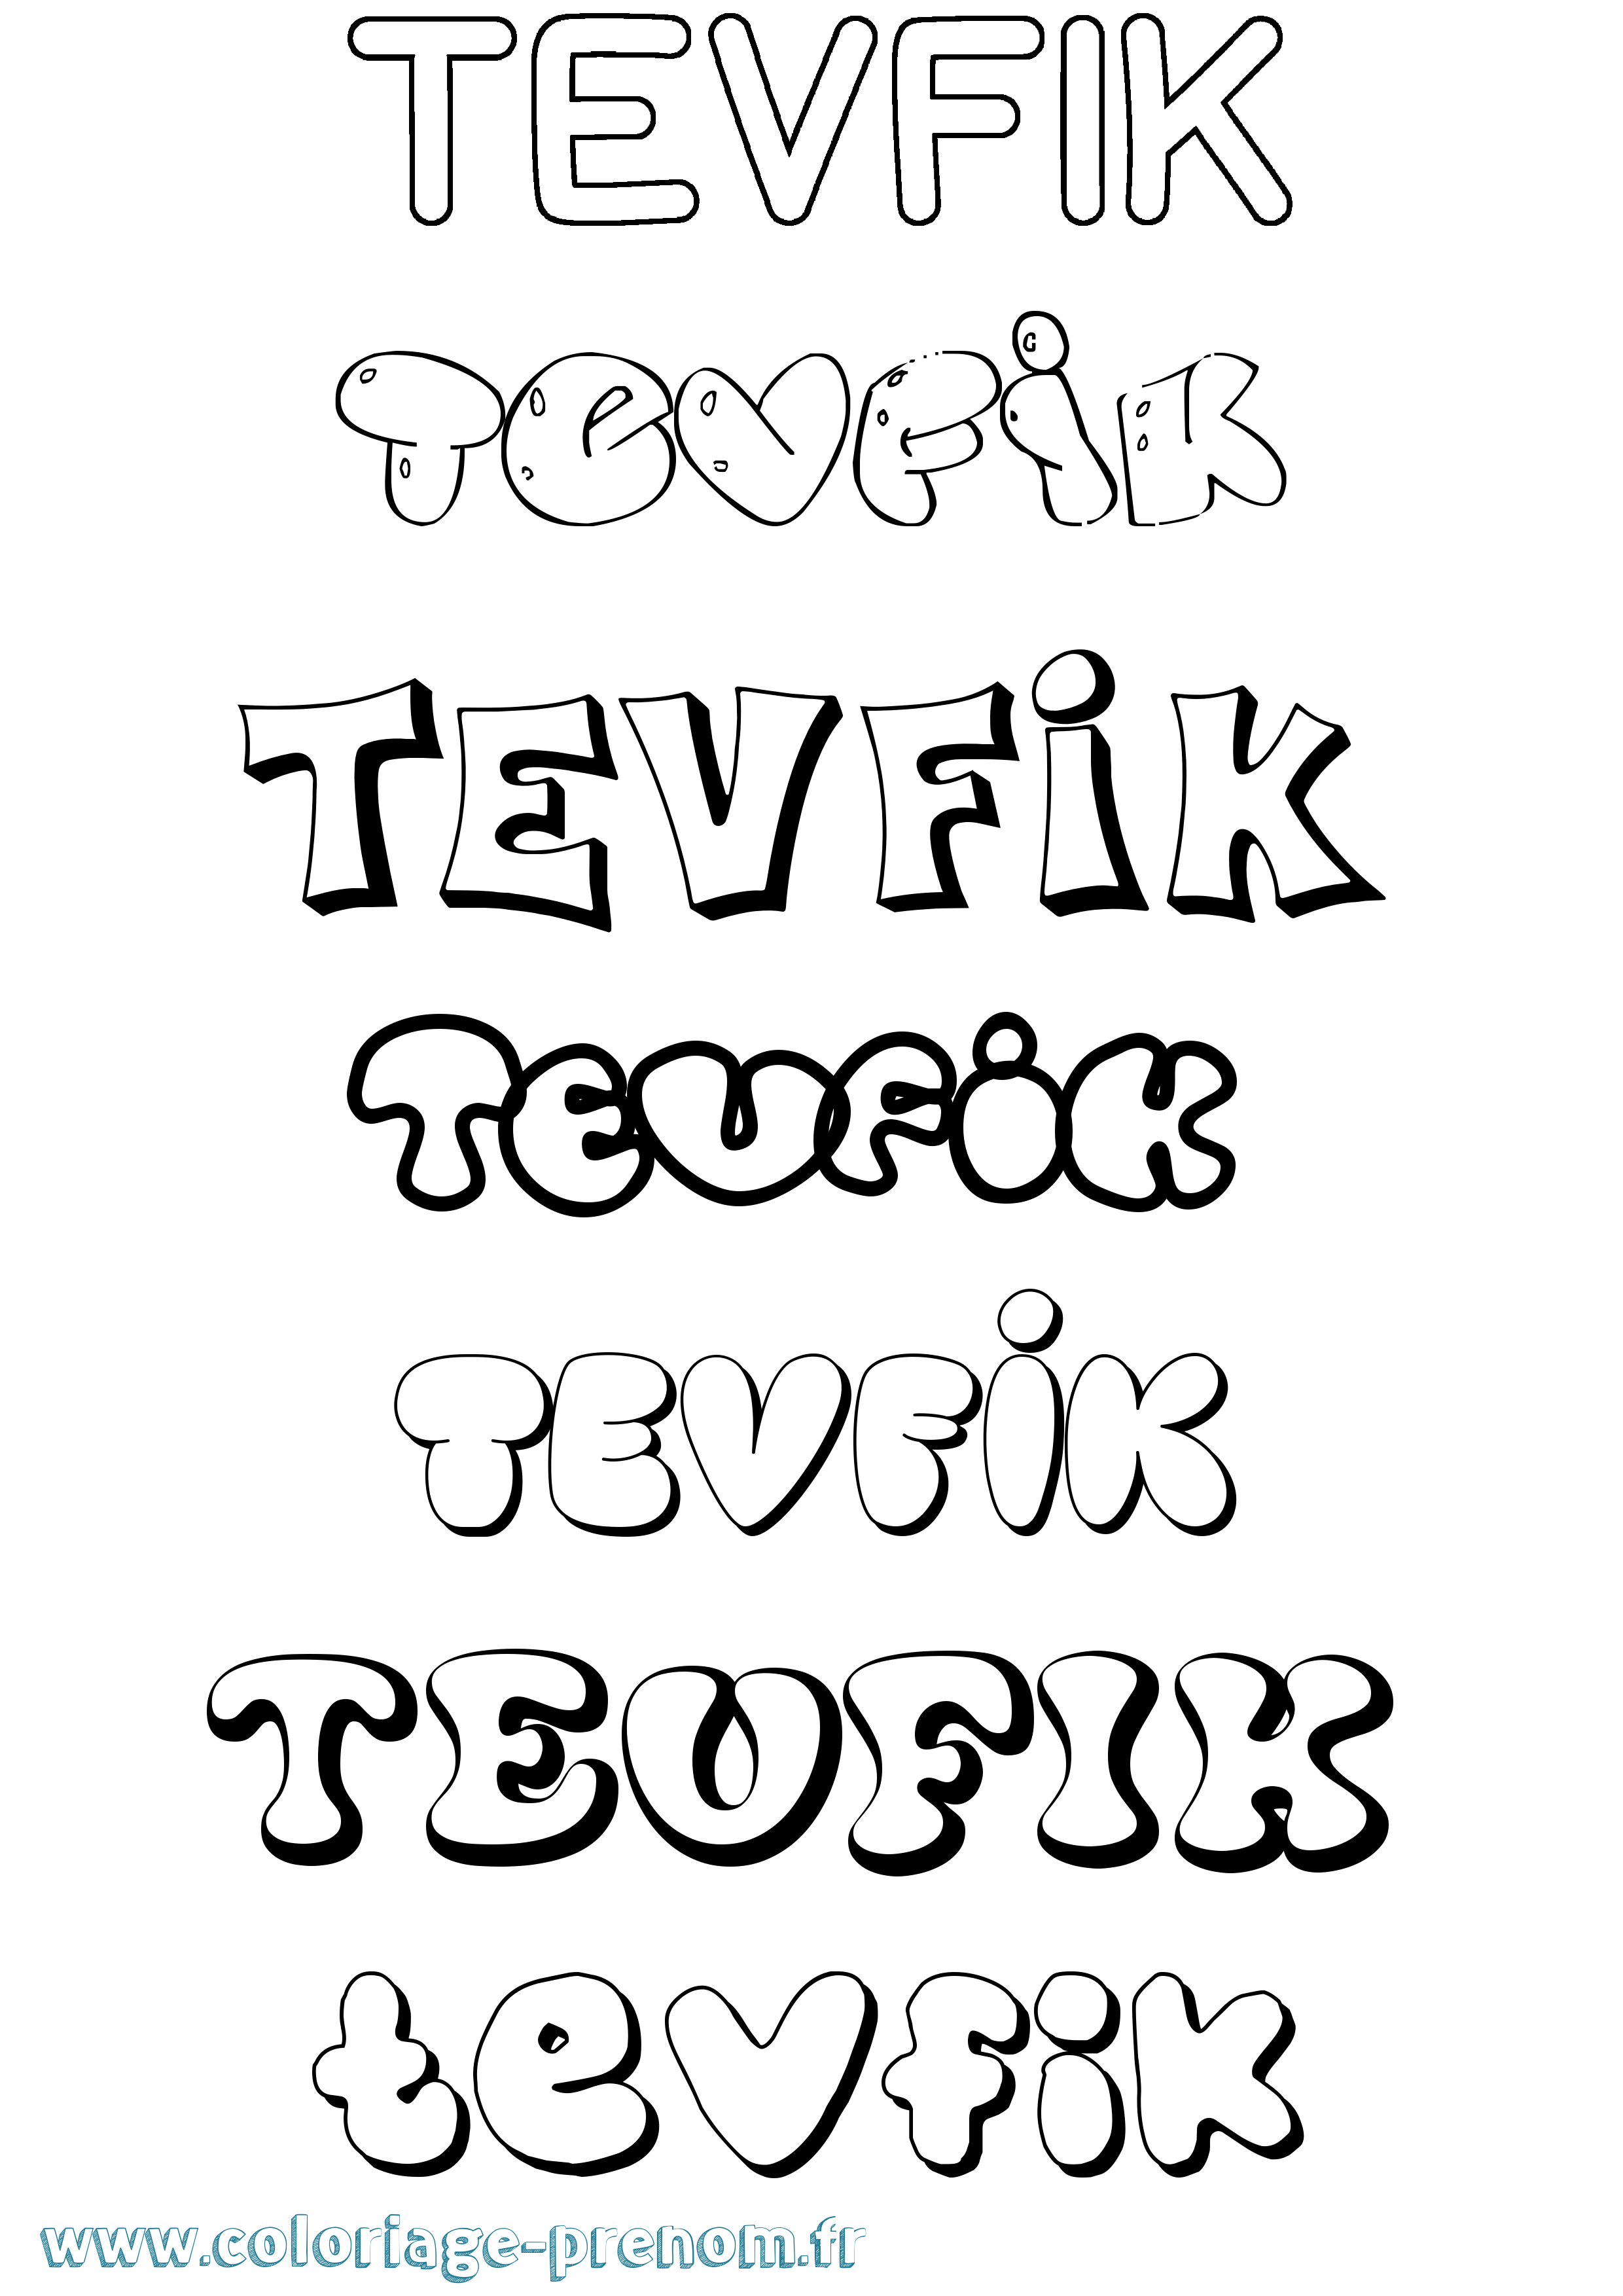 Coloriage prénom Tevfik Bubble